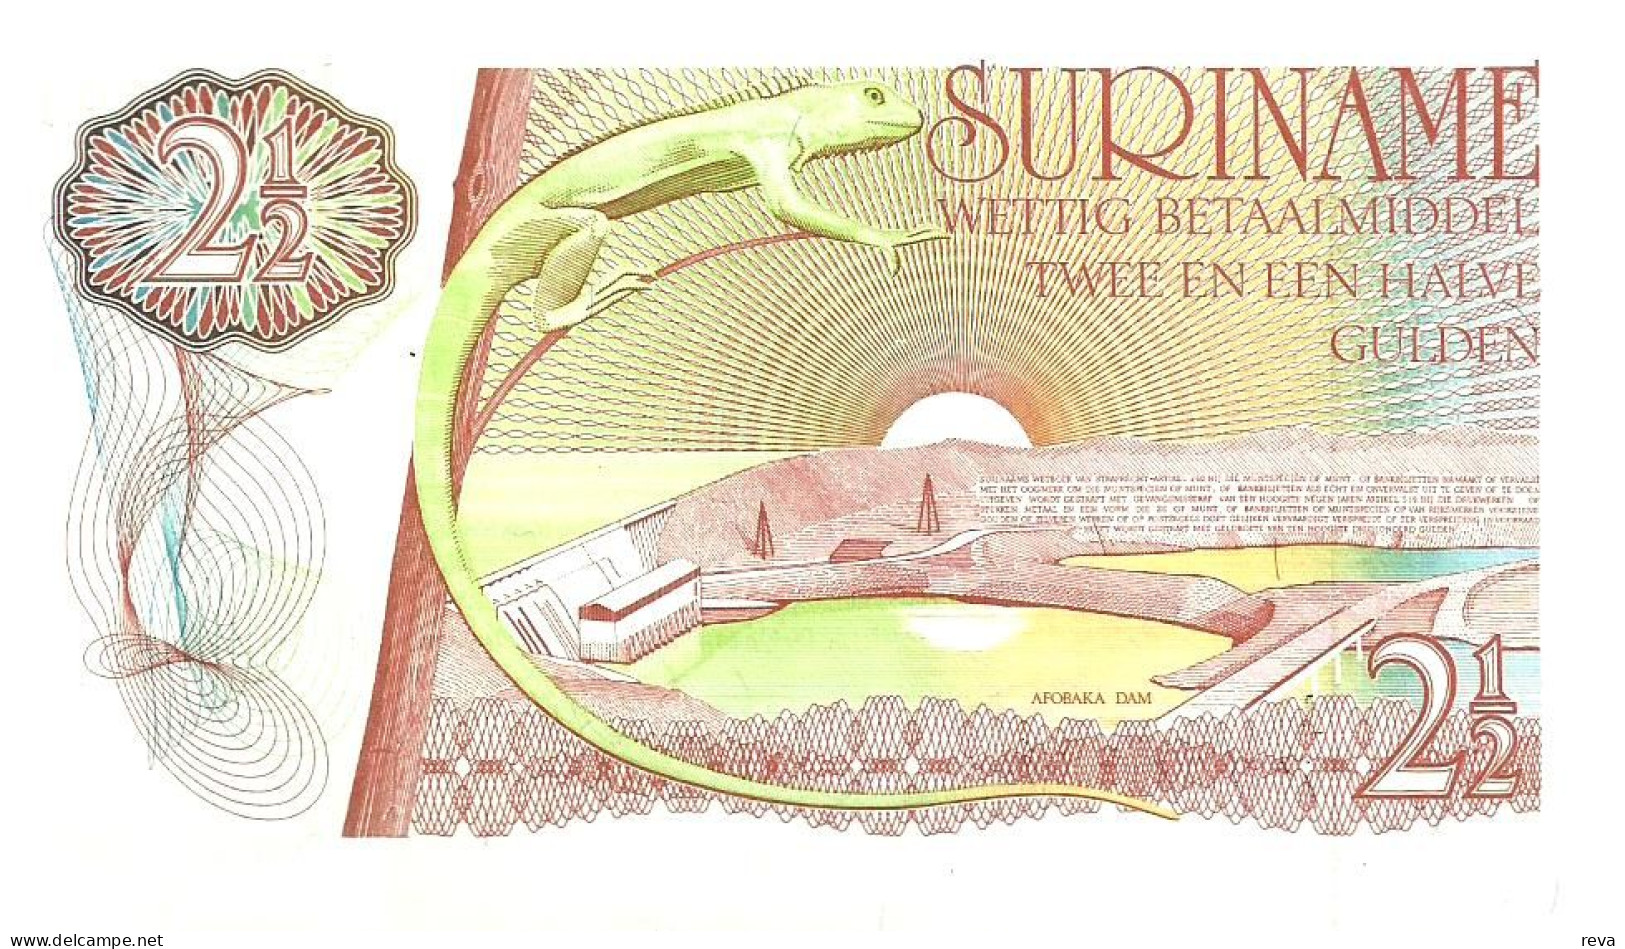 SURINAM 2.50 GULDEN ORANGE BIRD FRONT LANDSCAPE BACK DATED 01-11-1985) P119a UNC READ DESCRIPTION !! - Surinam